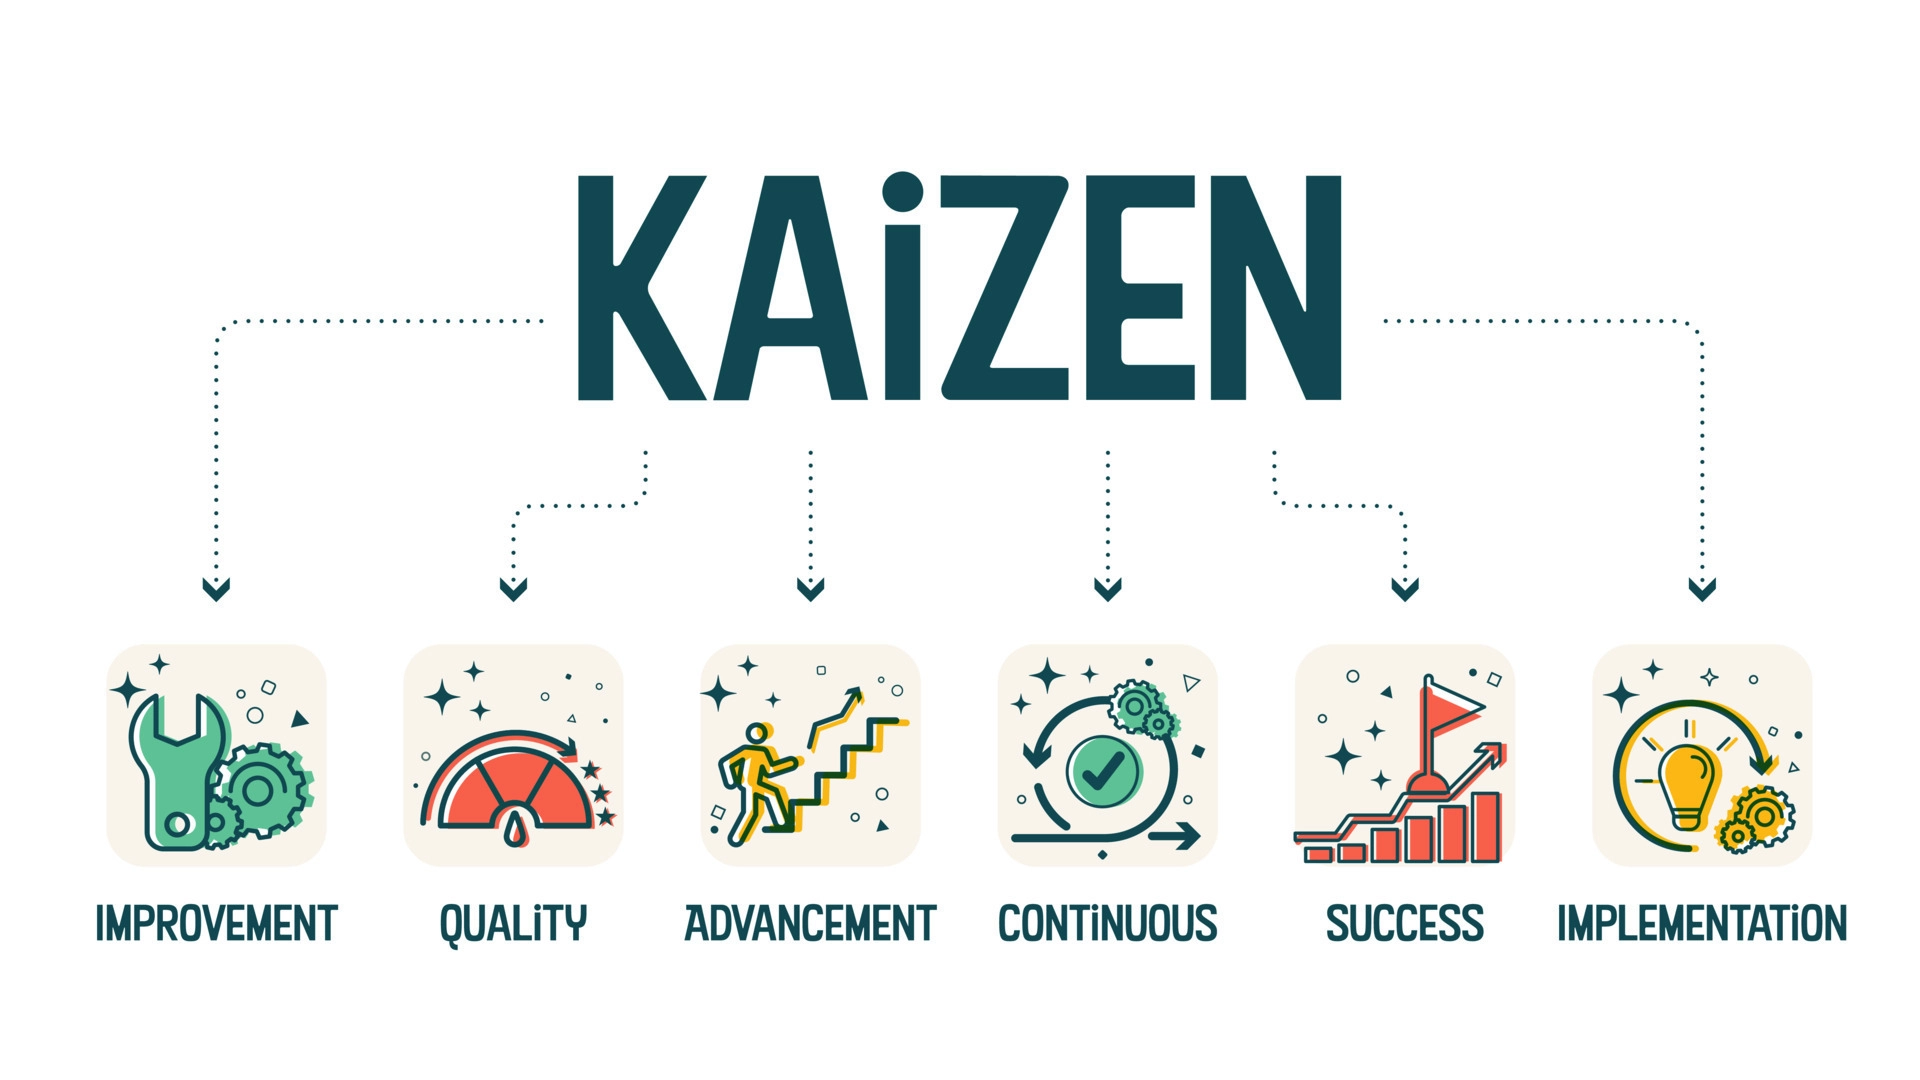 quy trình cải tiến - kaizen